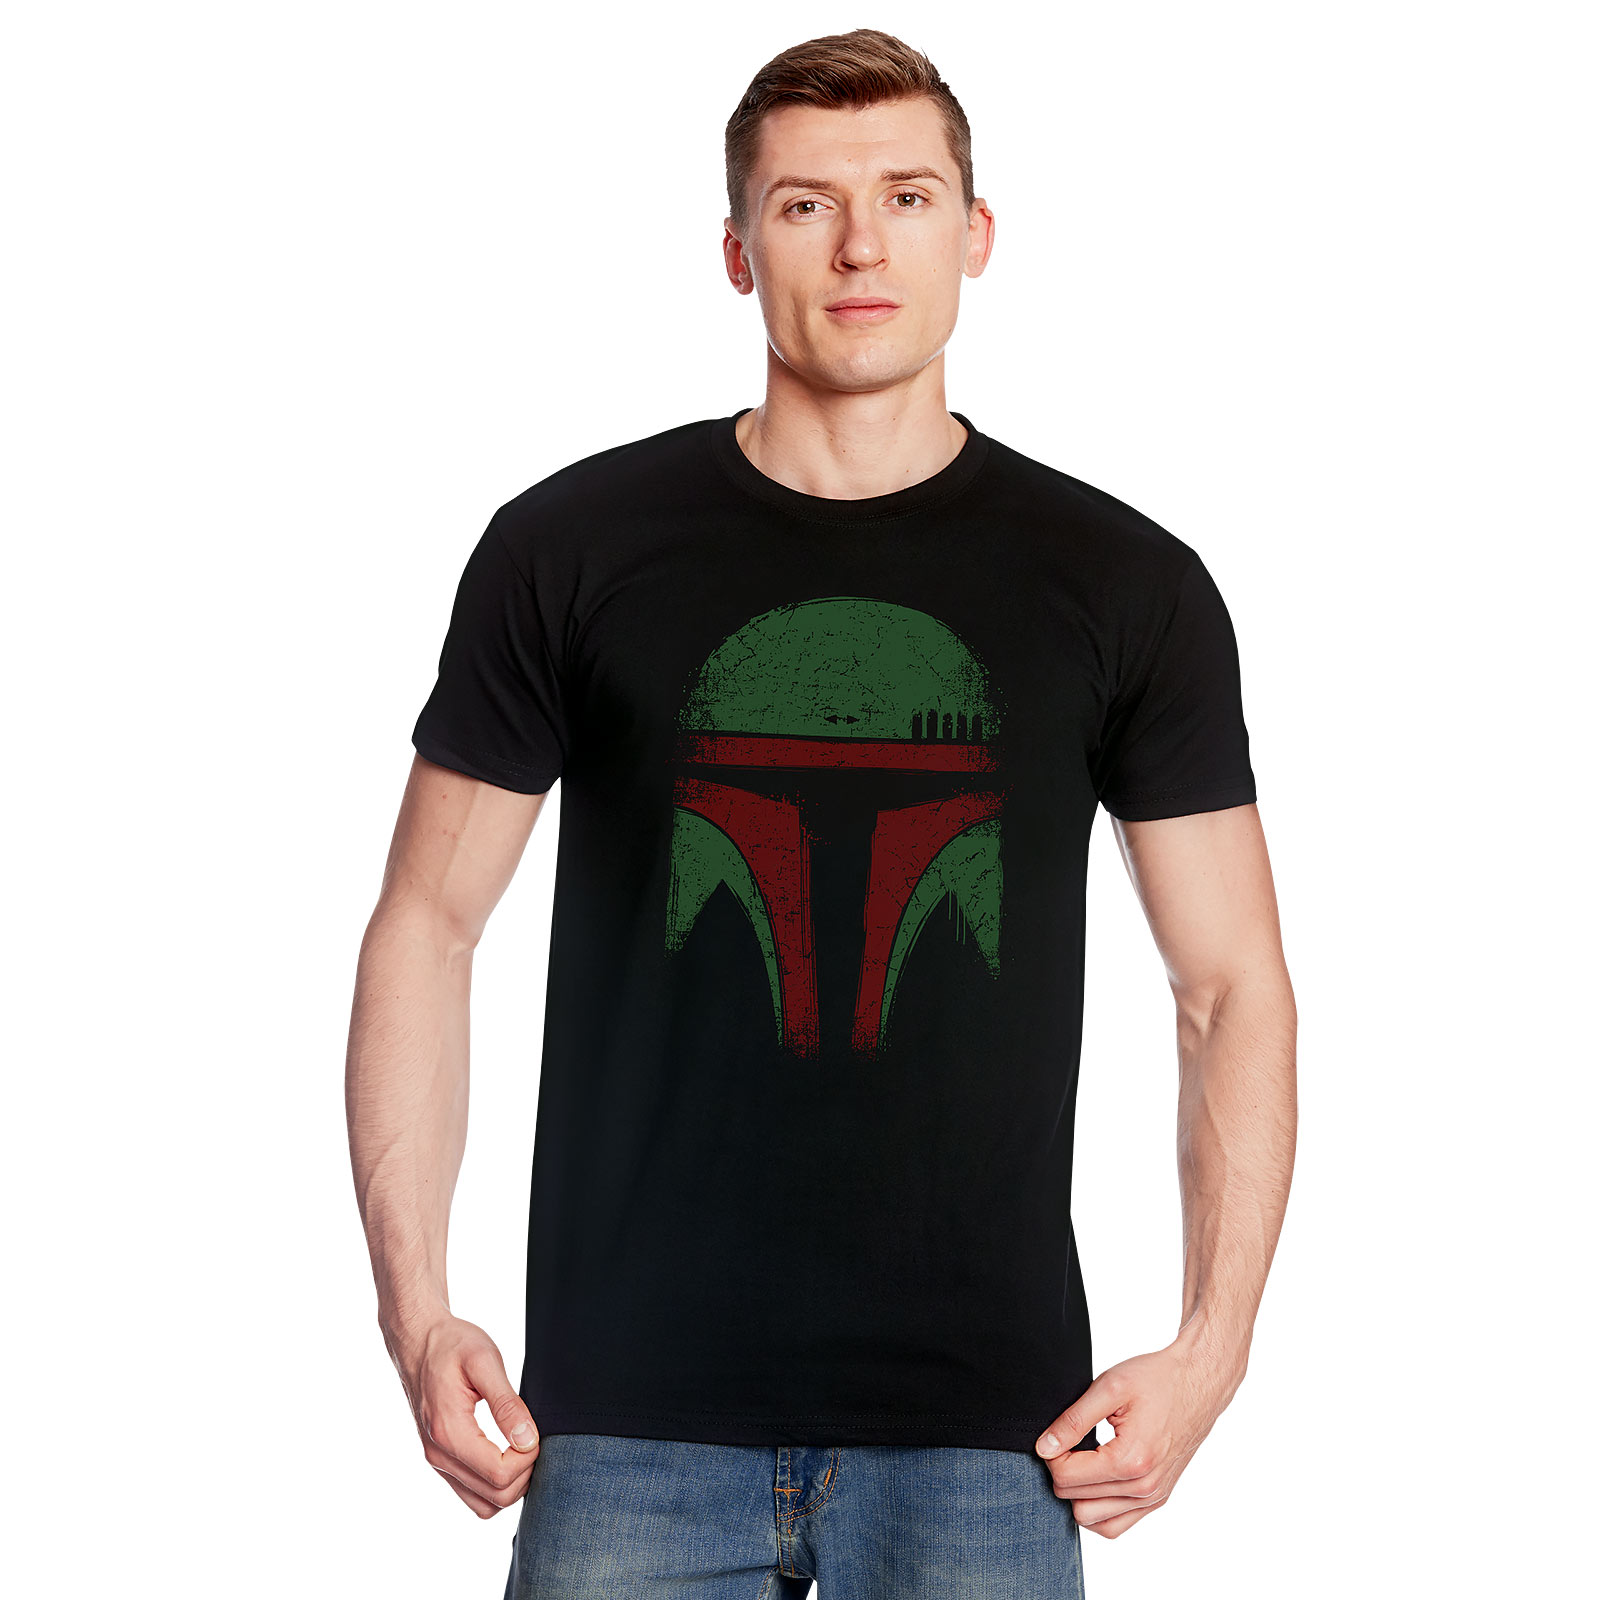 Boba Face T-Shirt for Star Wars Fans Black